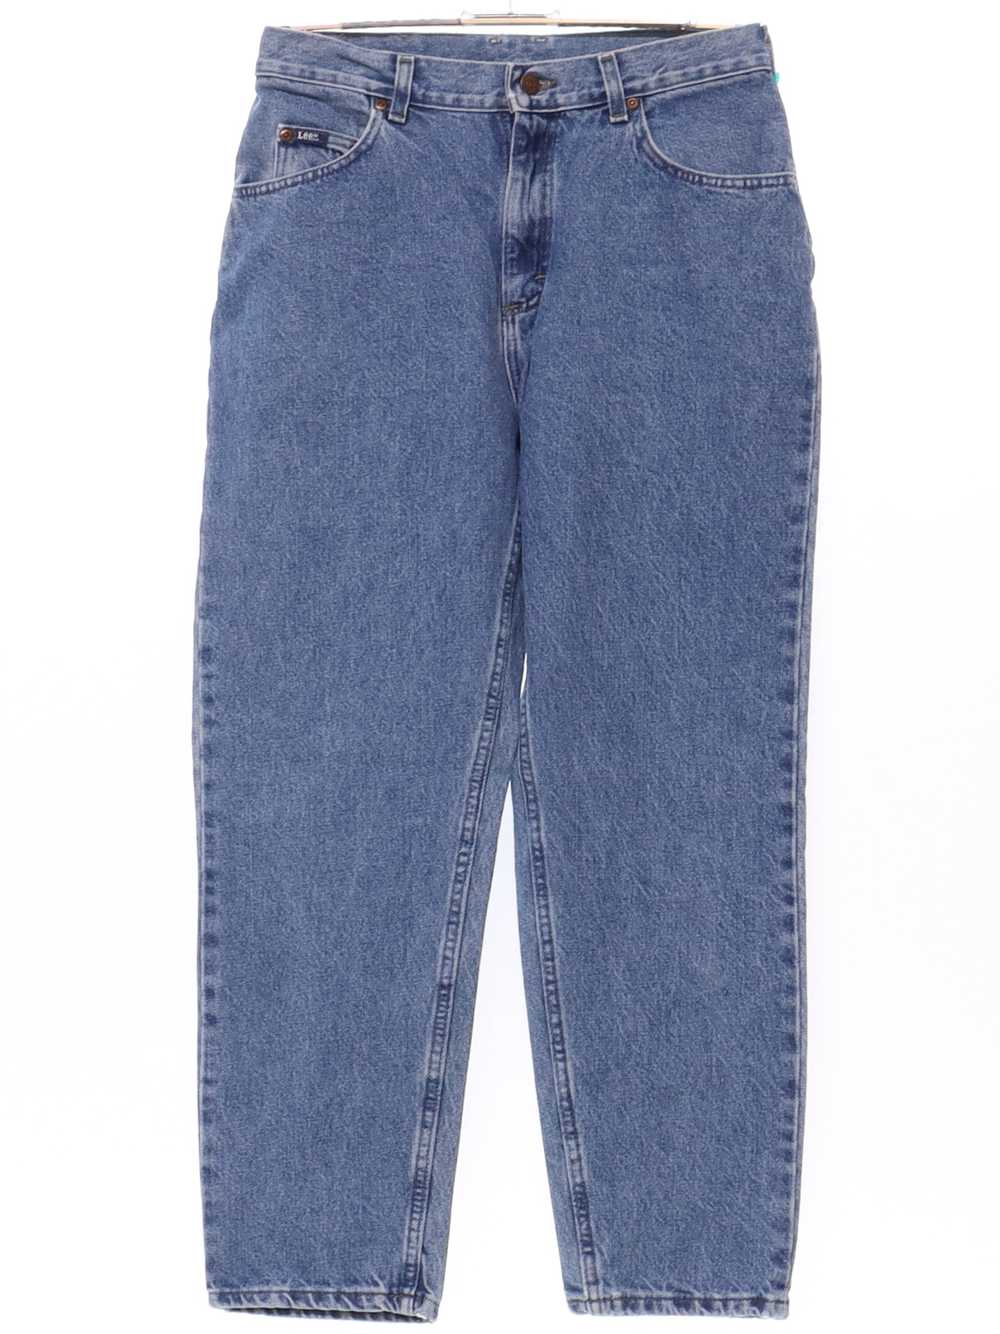 1990's Lee Womens Lee Denim Jeans Pants - image 1